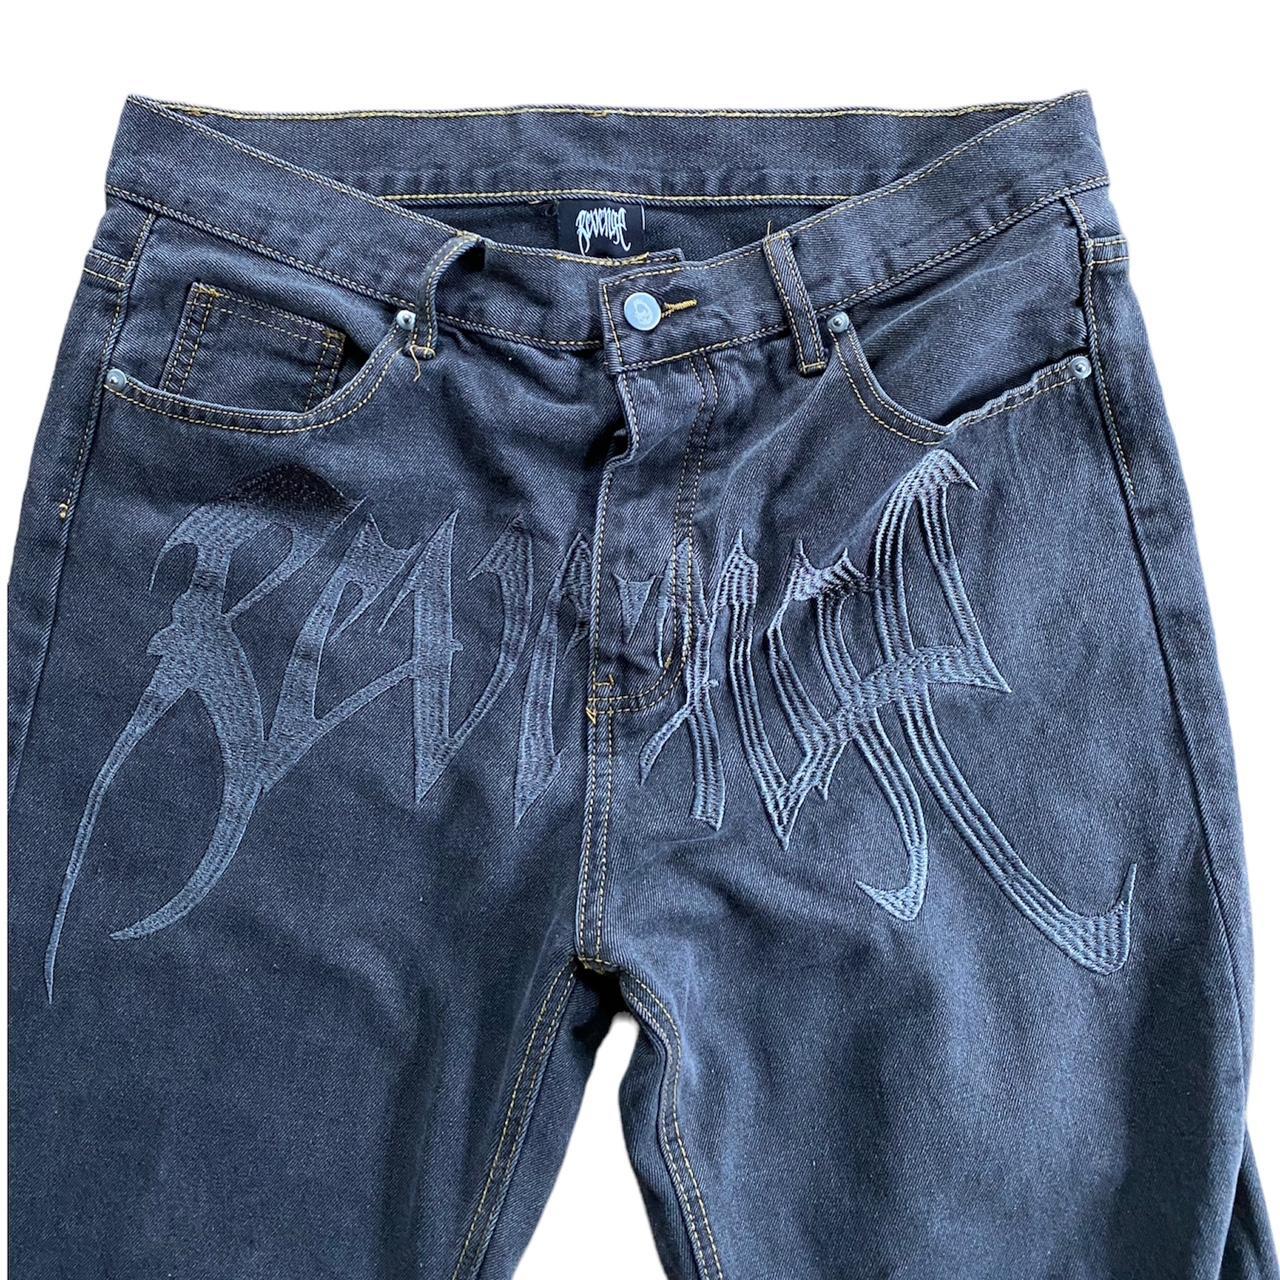 Revenge jeans Size xl - Depop